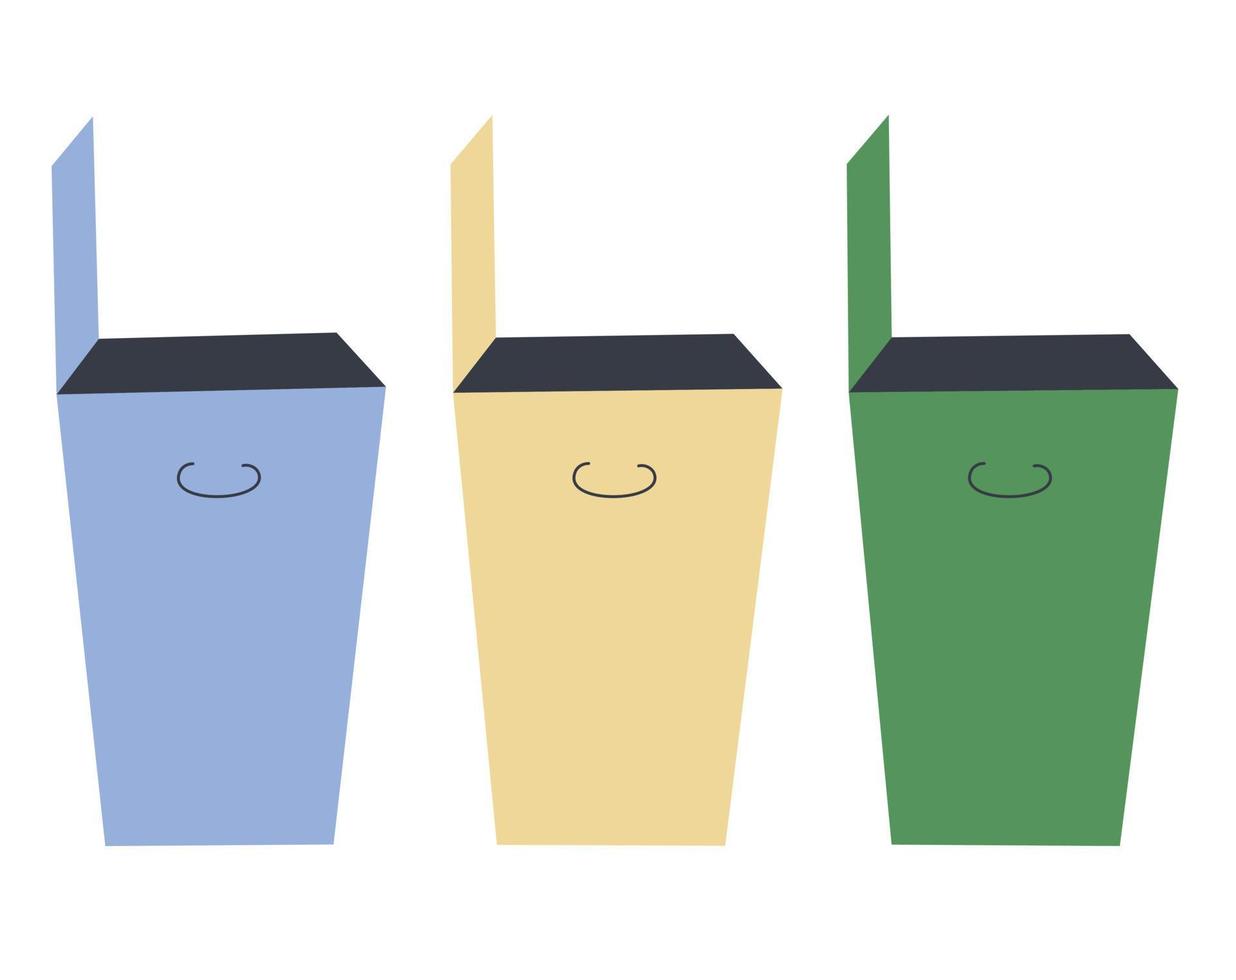 tre bidoni della spazzatura in blu, giallo e verde. il concetto di raccolta differenziata dei rifiuti, cura della natura, riciclaggio. illustrazione vettoriale. vettore